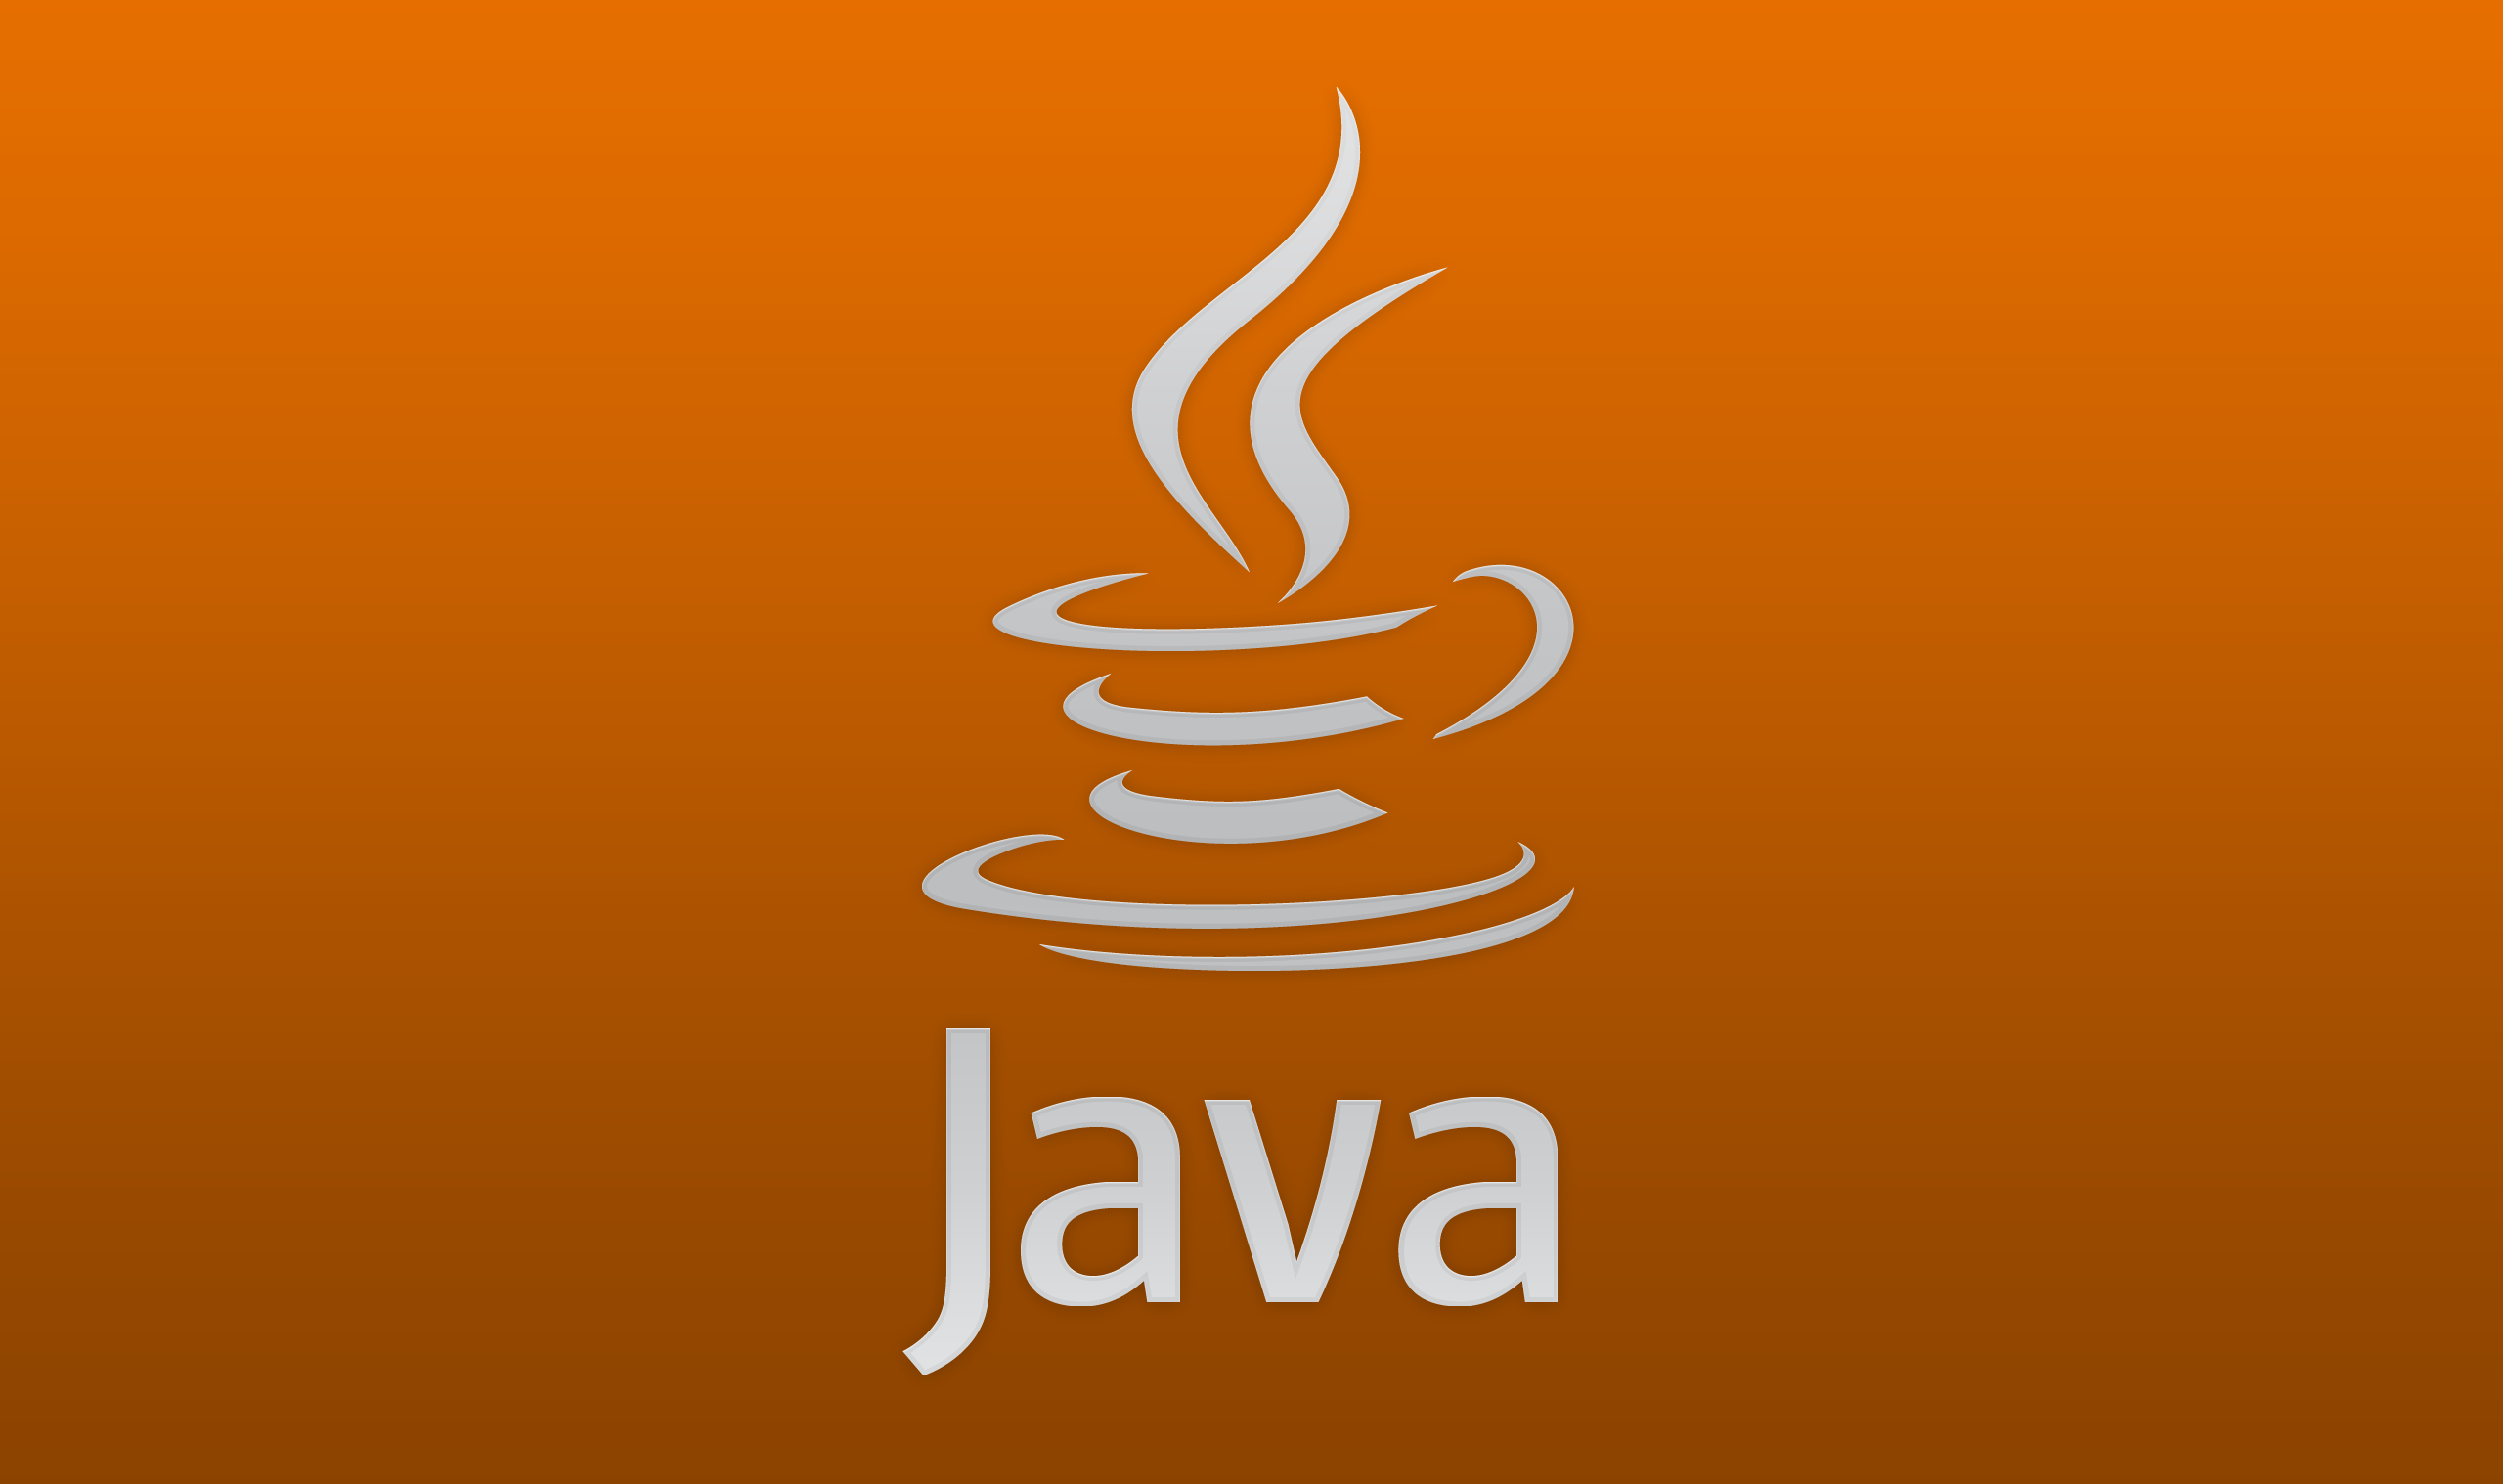 Java lại dính lỗi bảo mật để cài đặt trojan vào máy người dùng 1